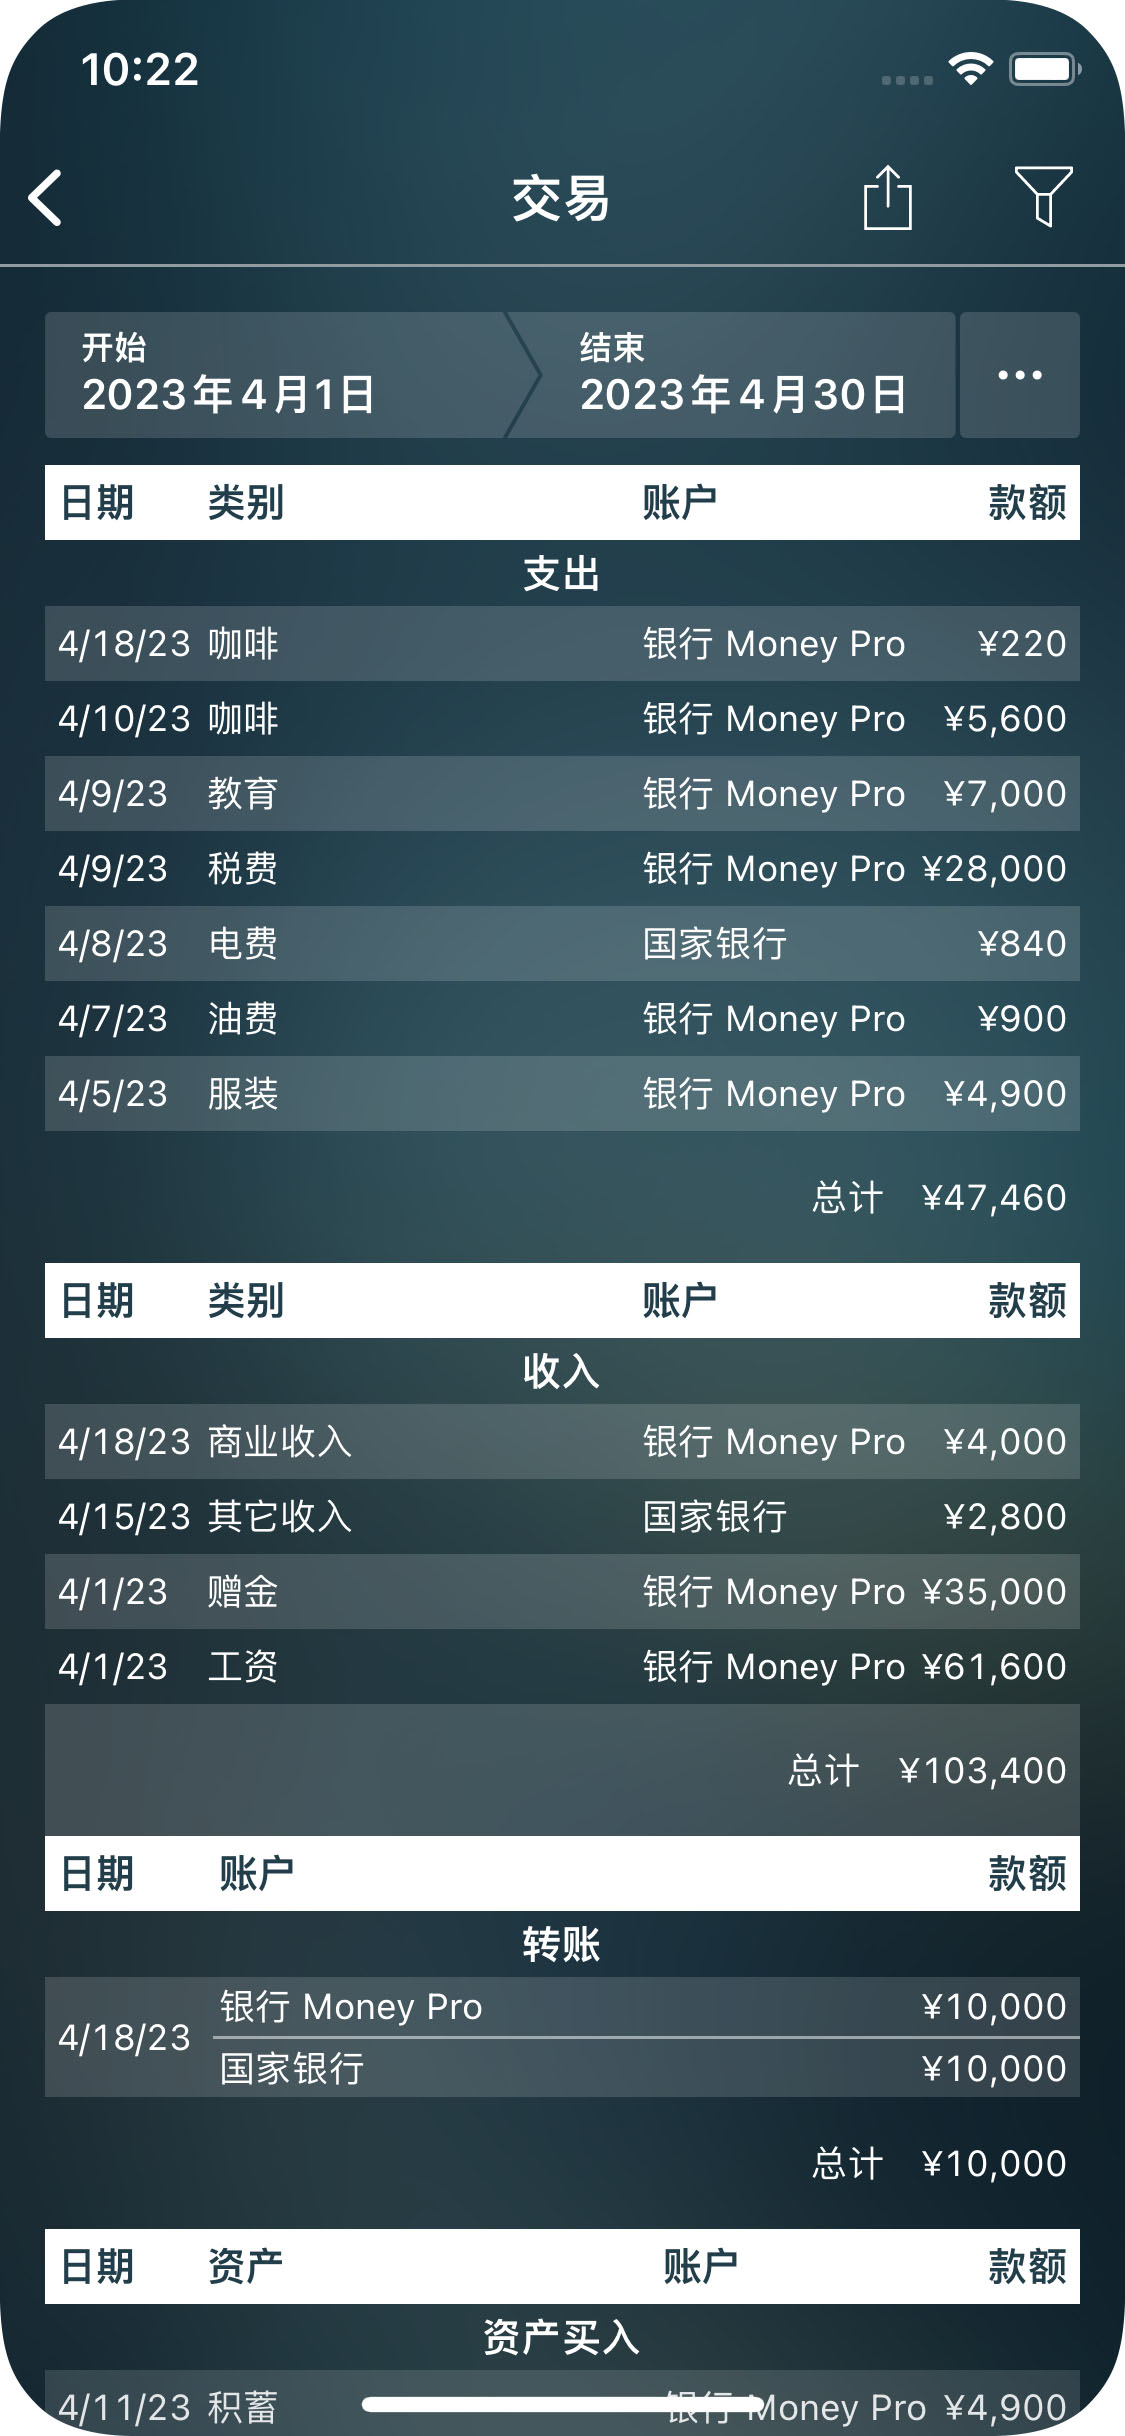 Money Pro - 交易报告 - iPhone